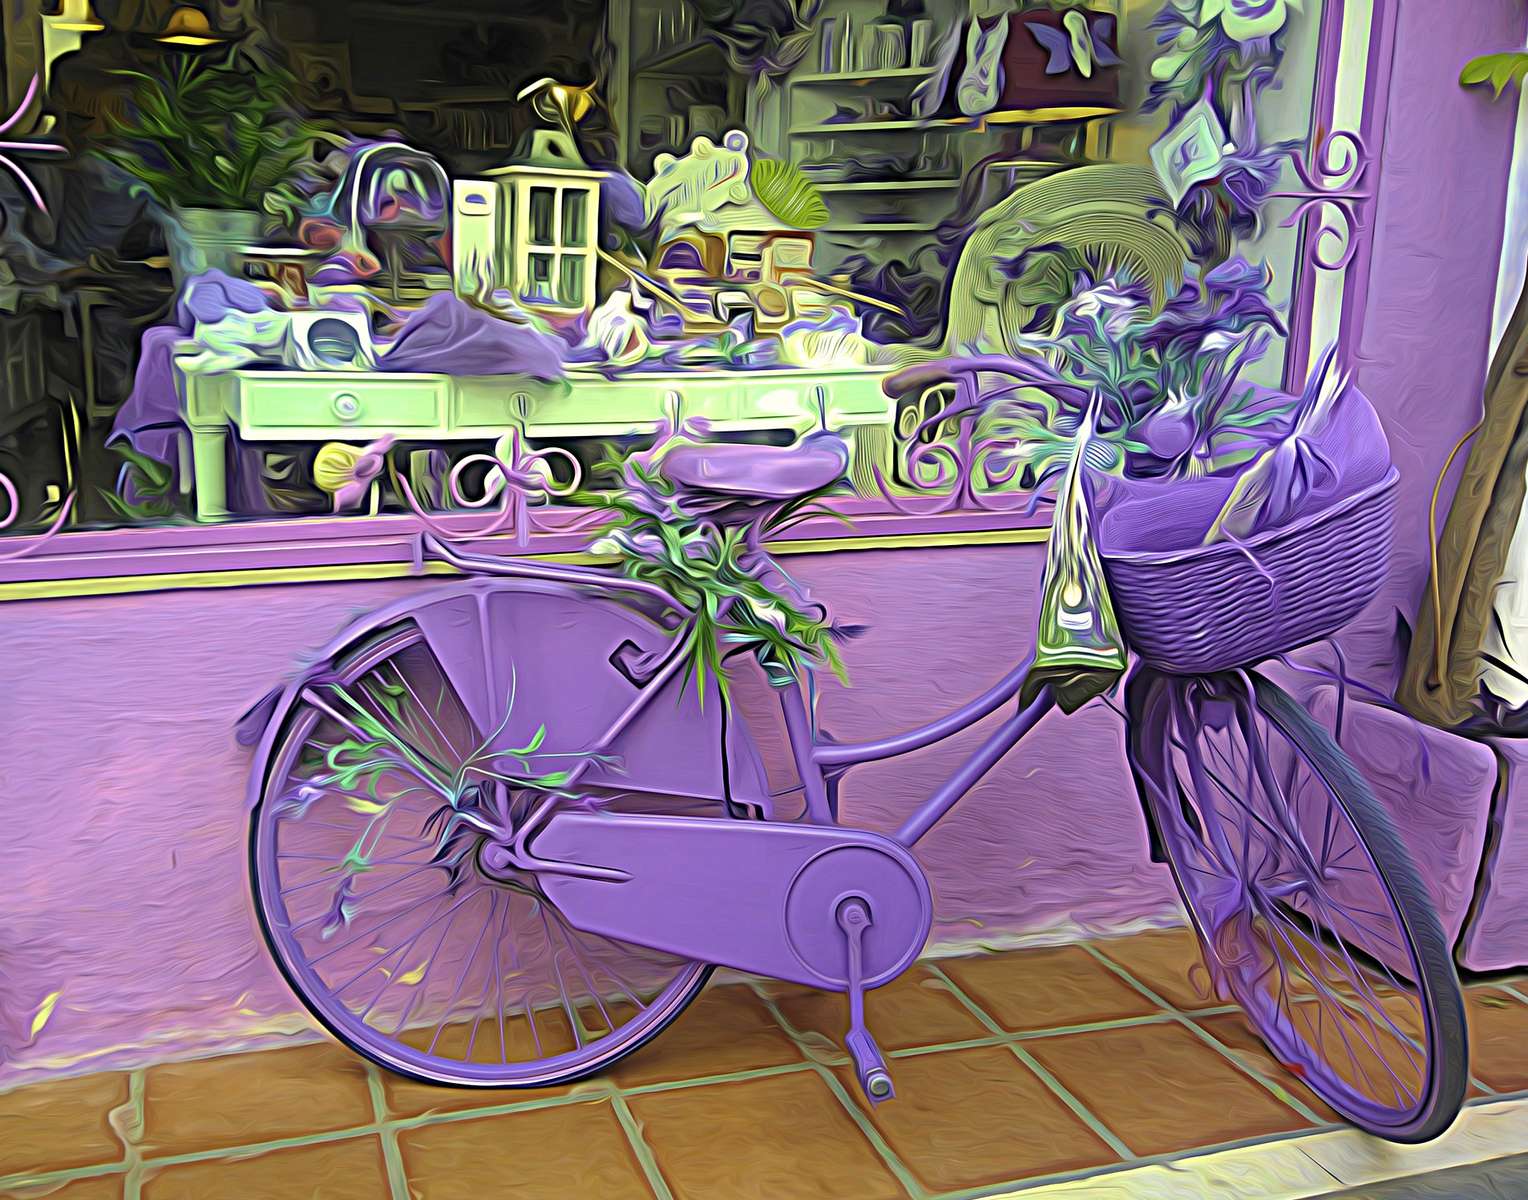 Liliowy rower pod witryną - kompozycja artystycza puzzle online